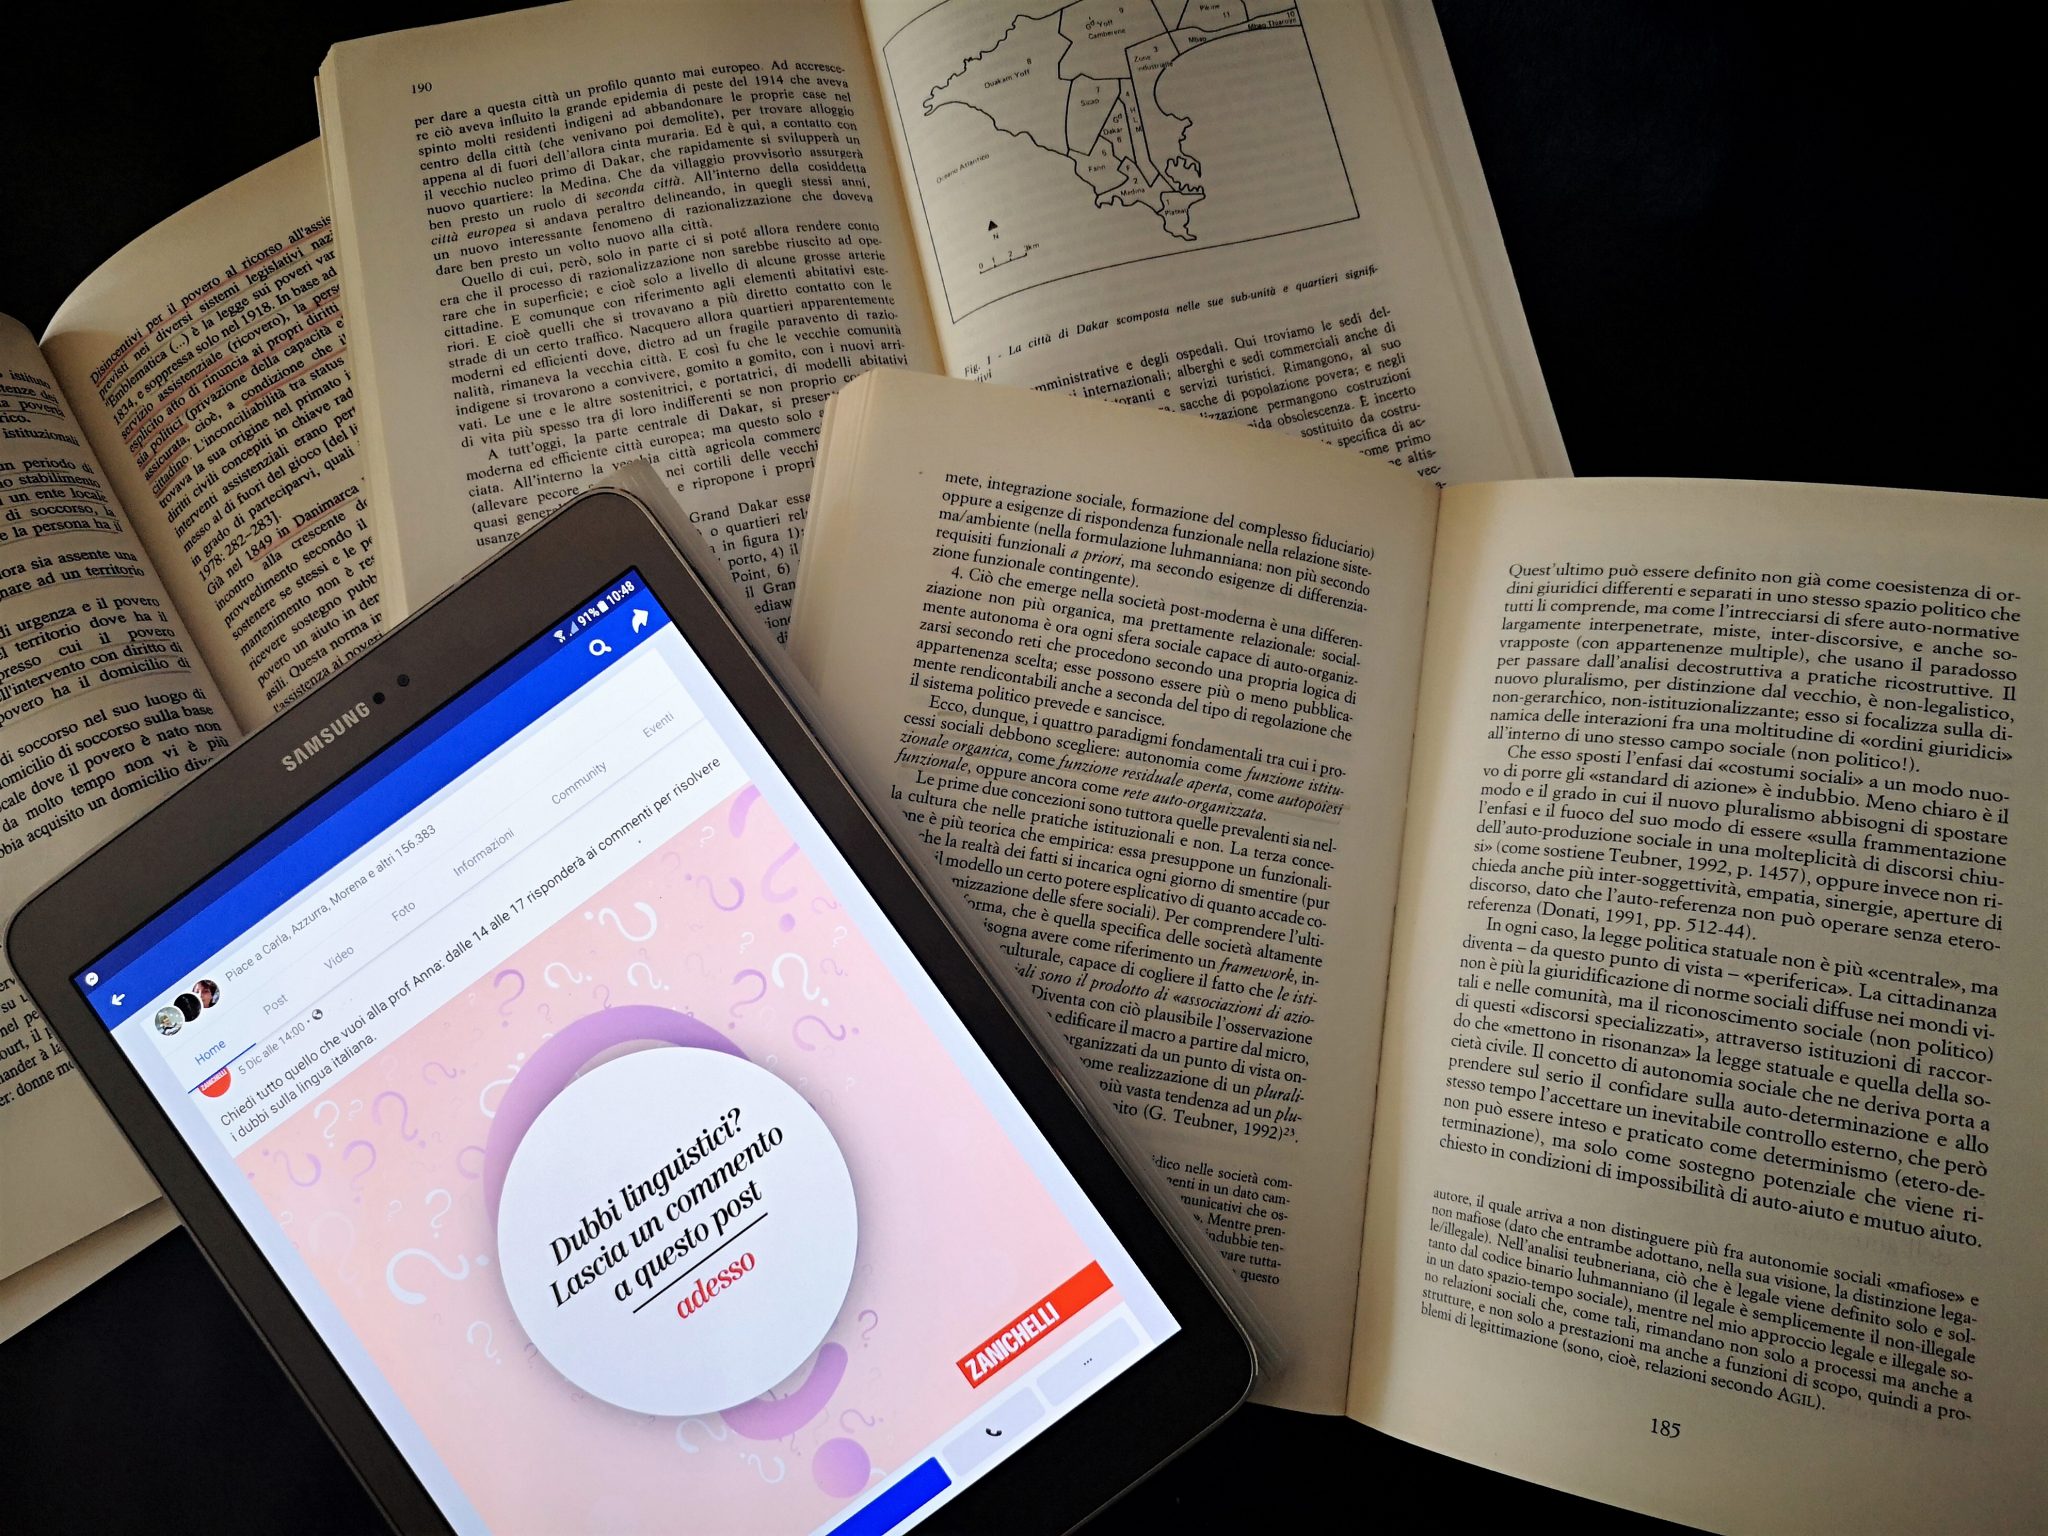 Presenza social degli editori: un tablet in mezzo ai libri